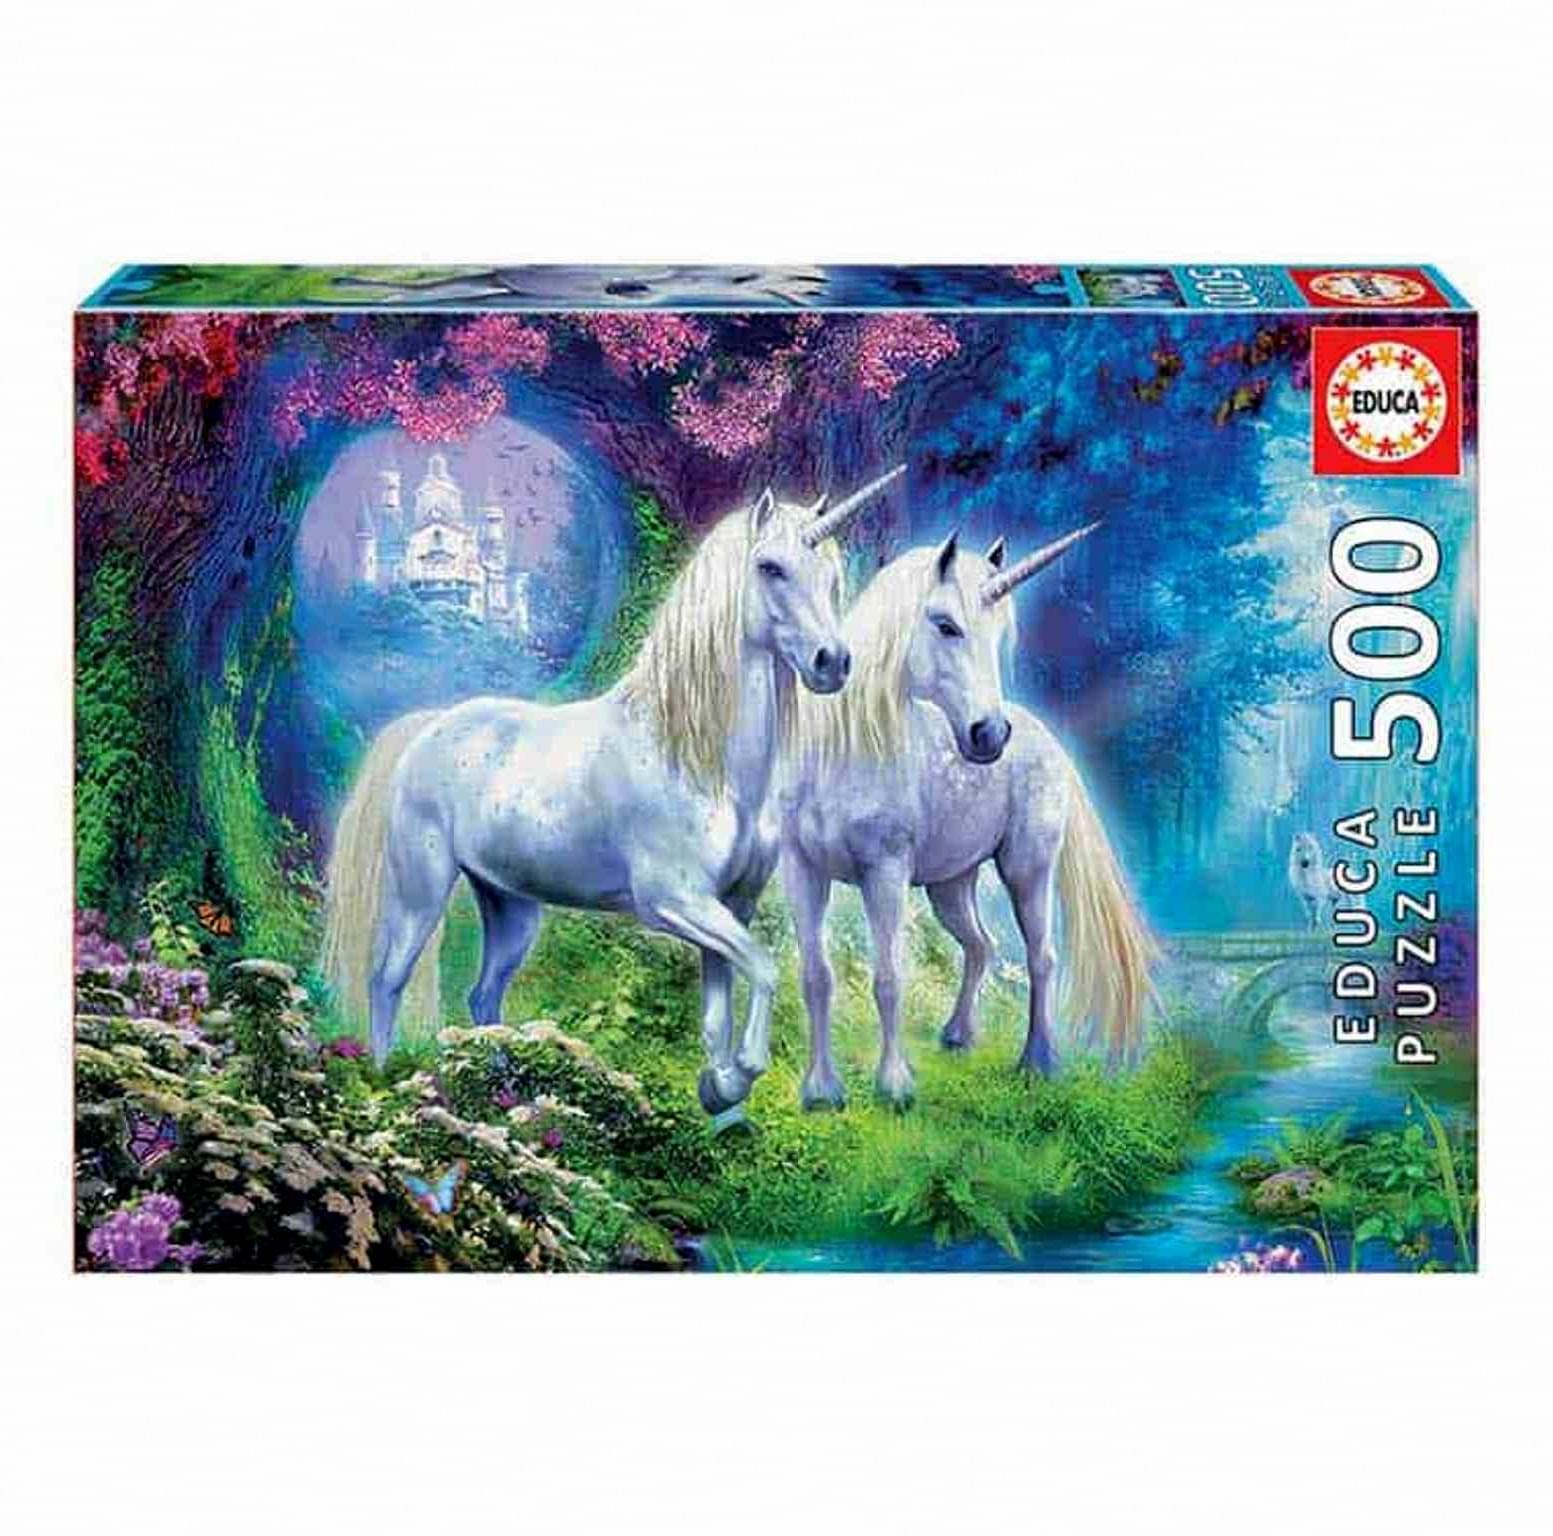 Puzzle Educa Unicorns in the forest 500pcs